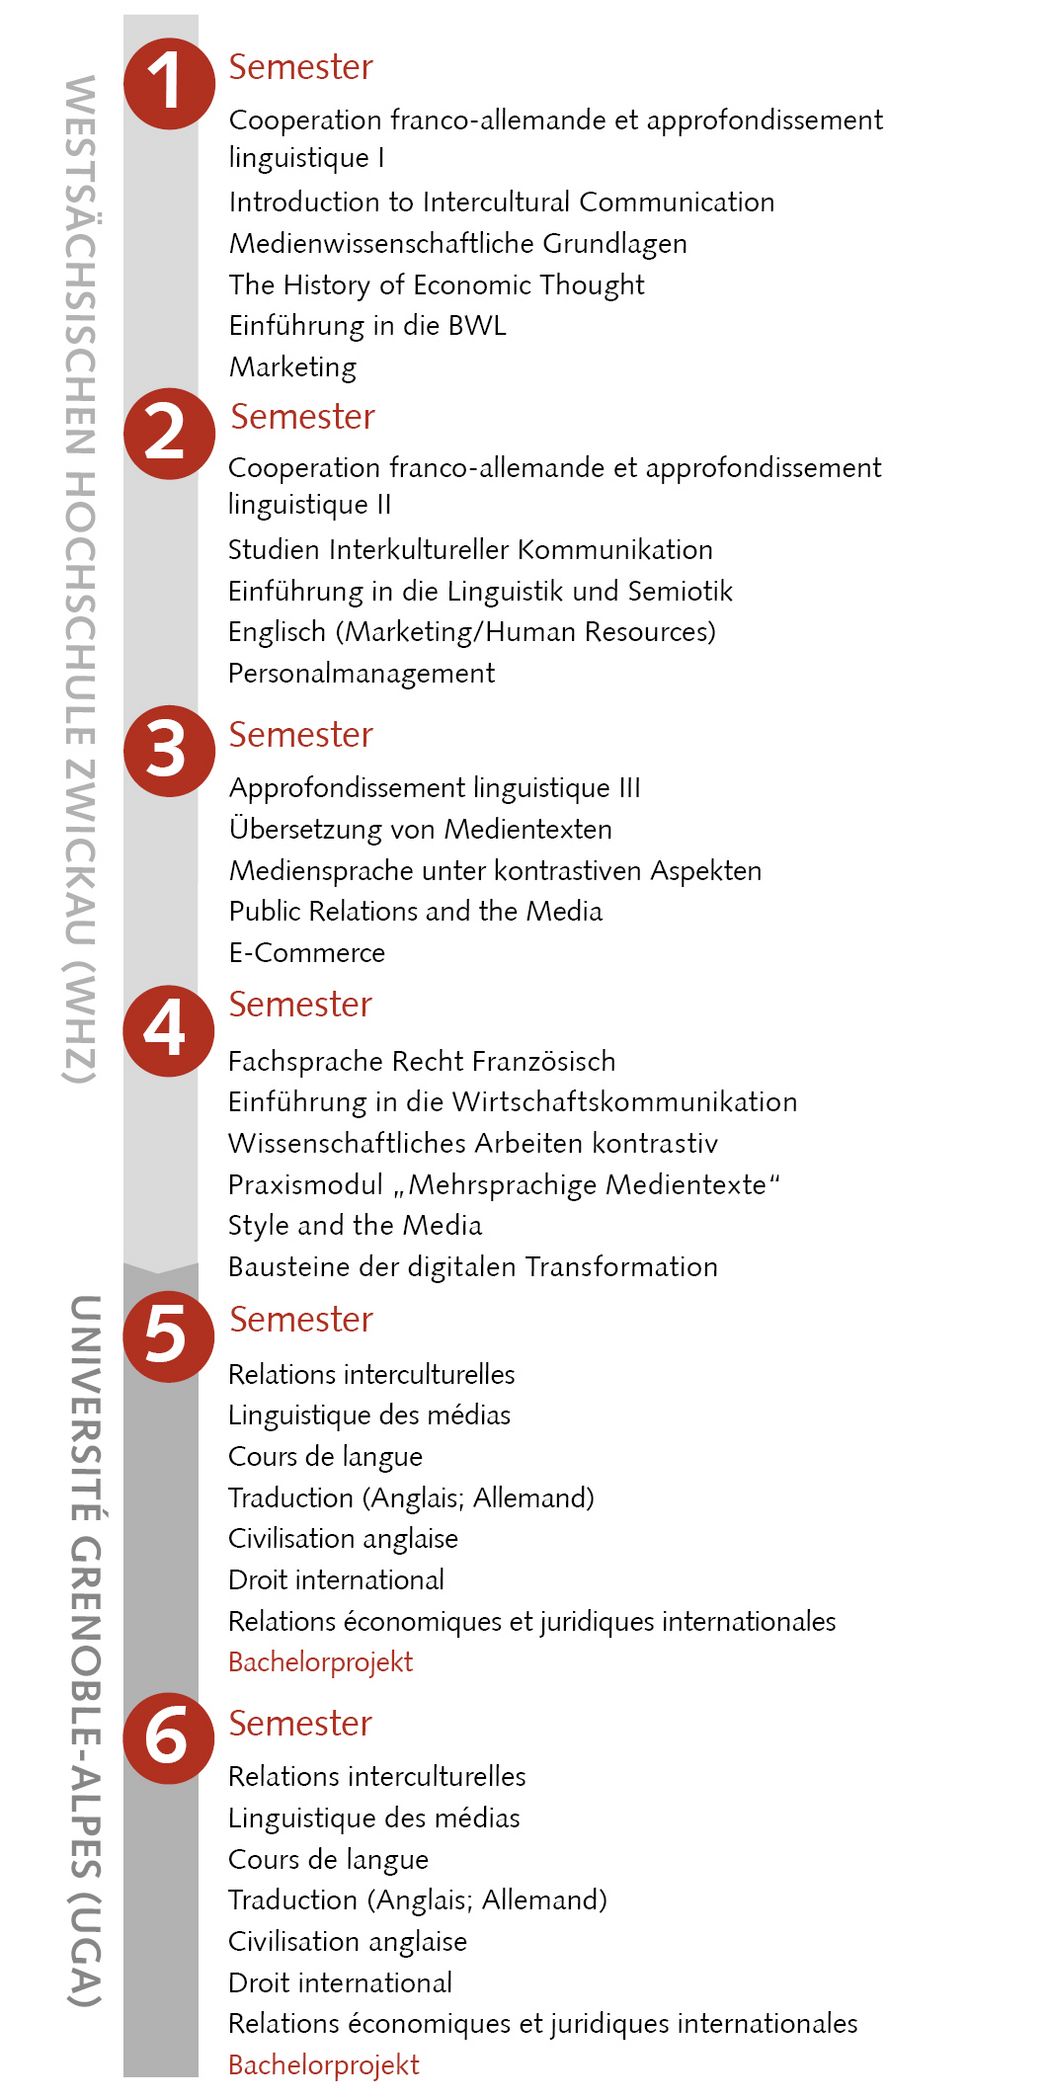 Abbildung: Studienablaufplan Bachelor-Studiengang Angewandte deutsch-französische Medienkommunikation (B.A.), zum Teil französisch 